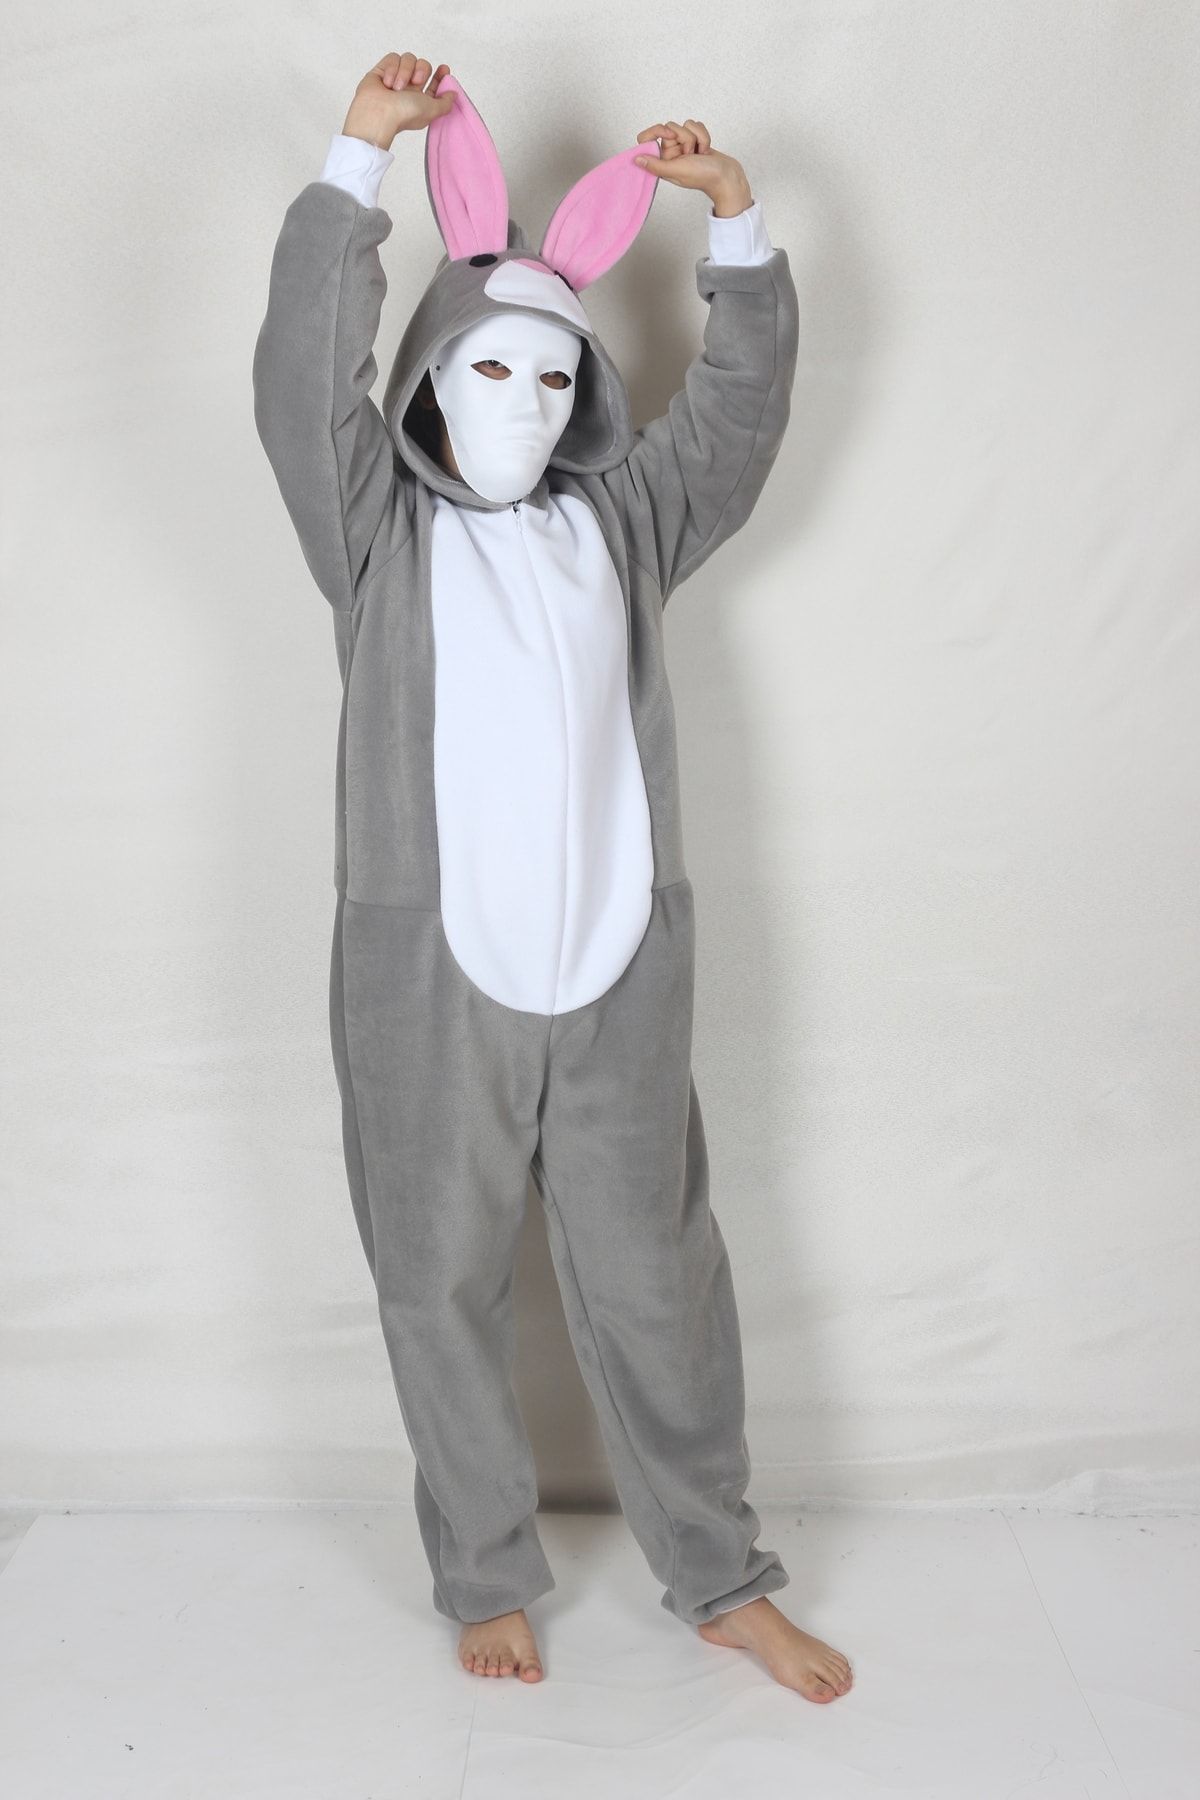 YÜSÜ Yetişkin Tavşan Kostümü Hayvan Kostümü Rahat Pijama Kostümü